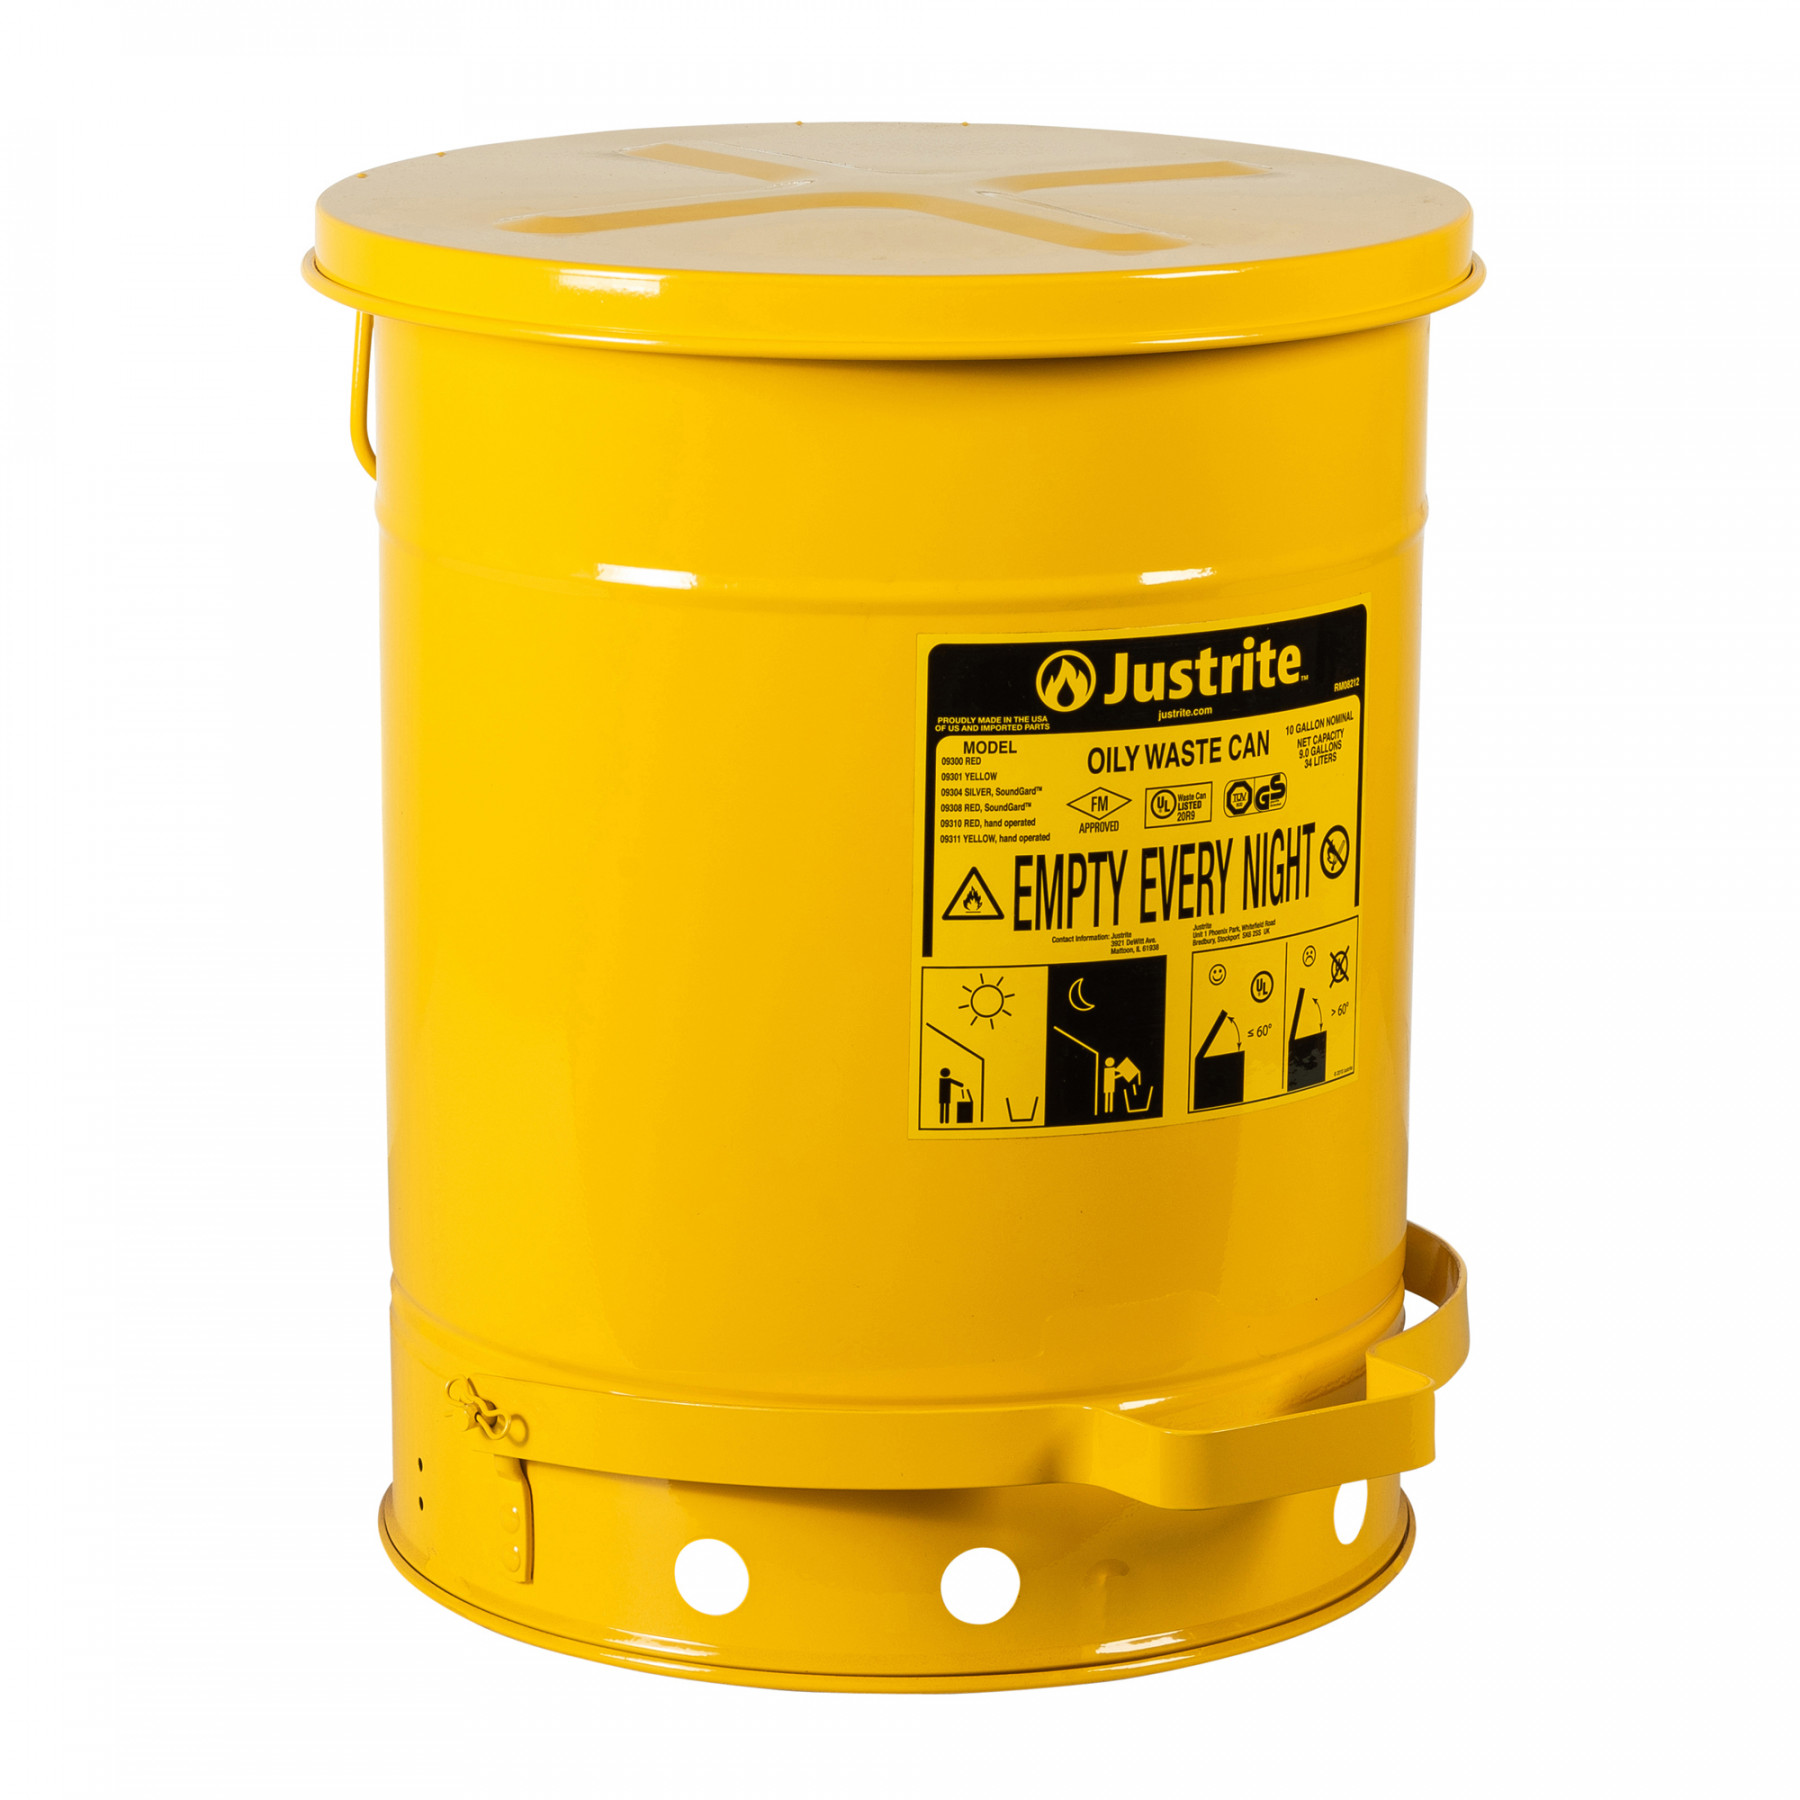 Sicherheits-Abfallbehälter für brennbare Stoffe, 23 Liter, in gelb